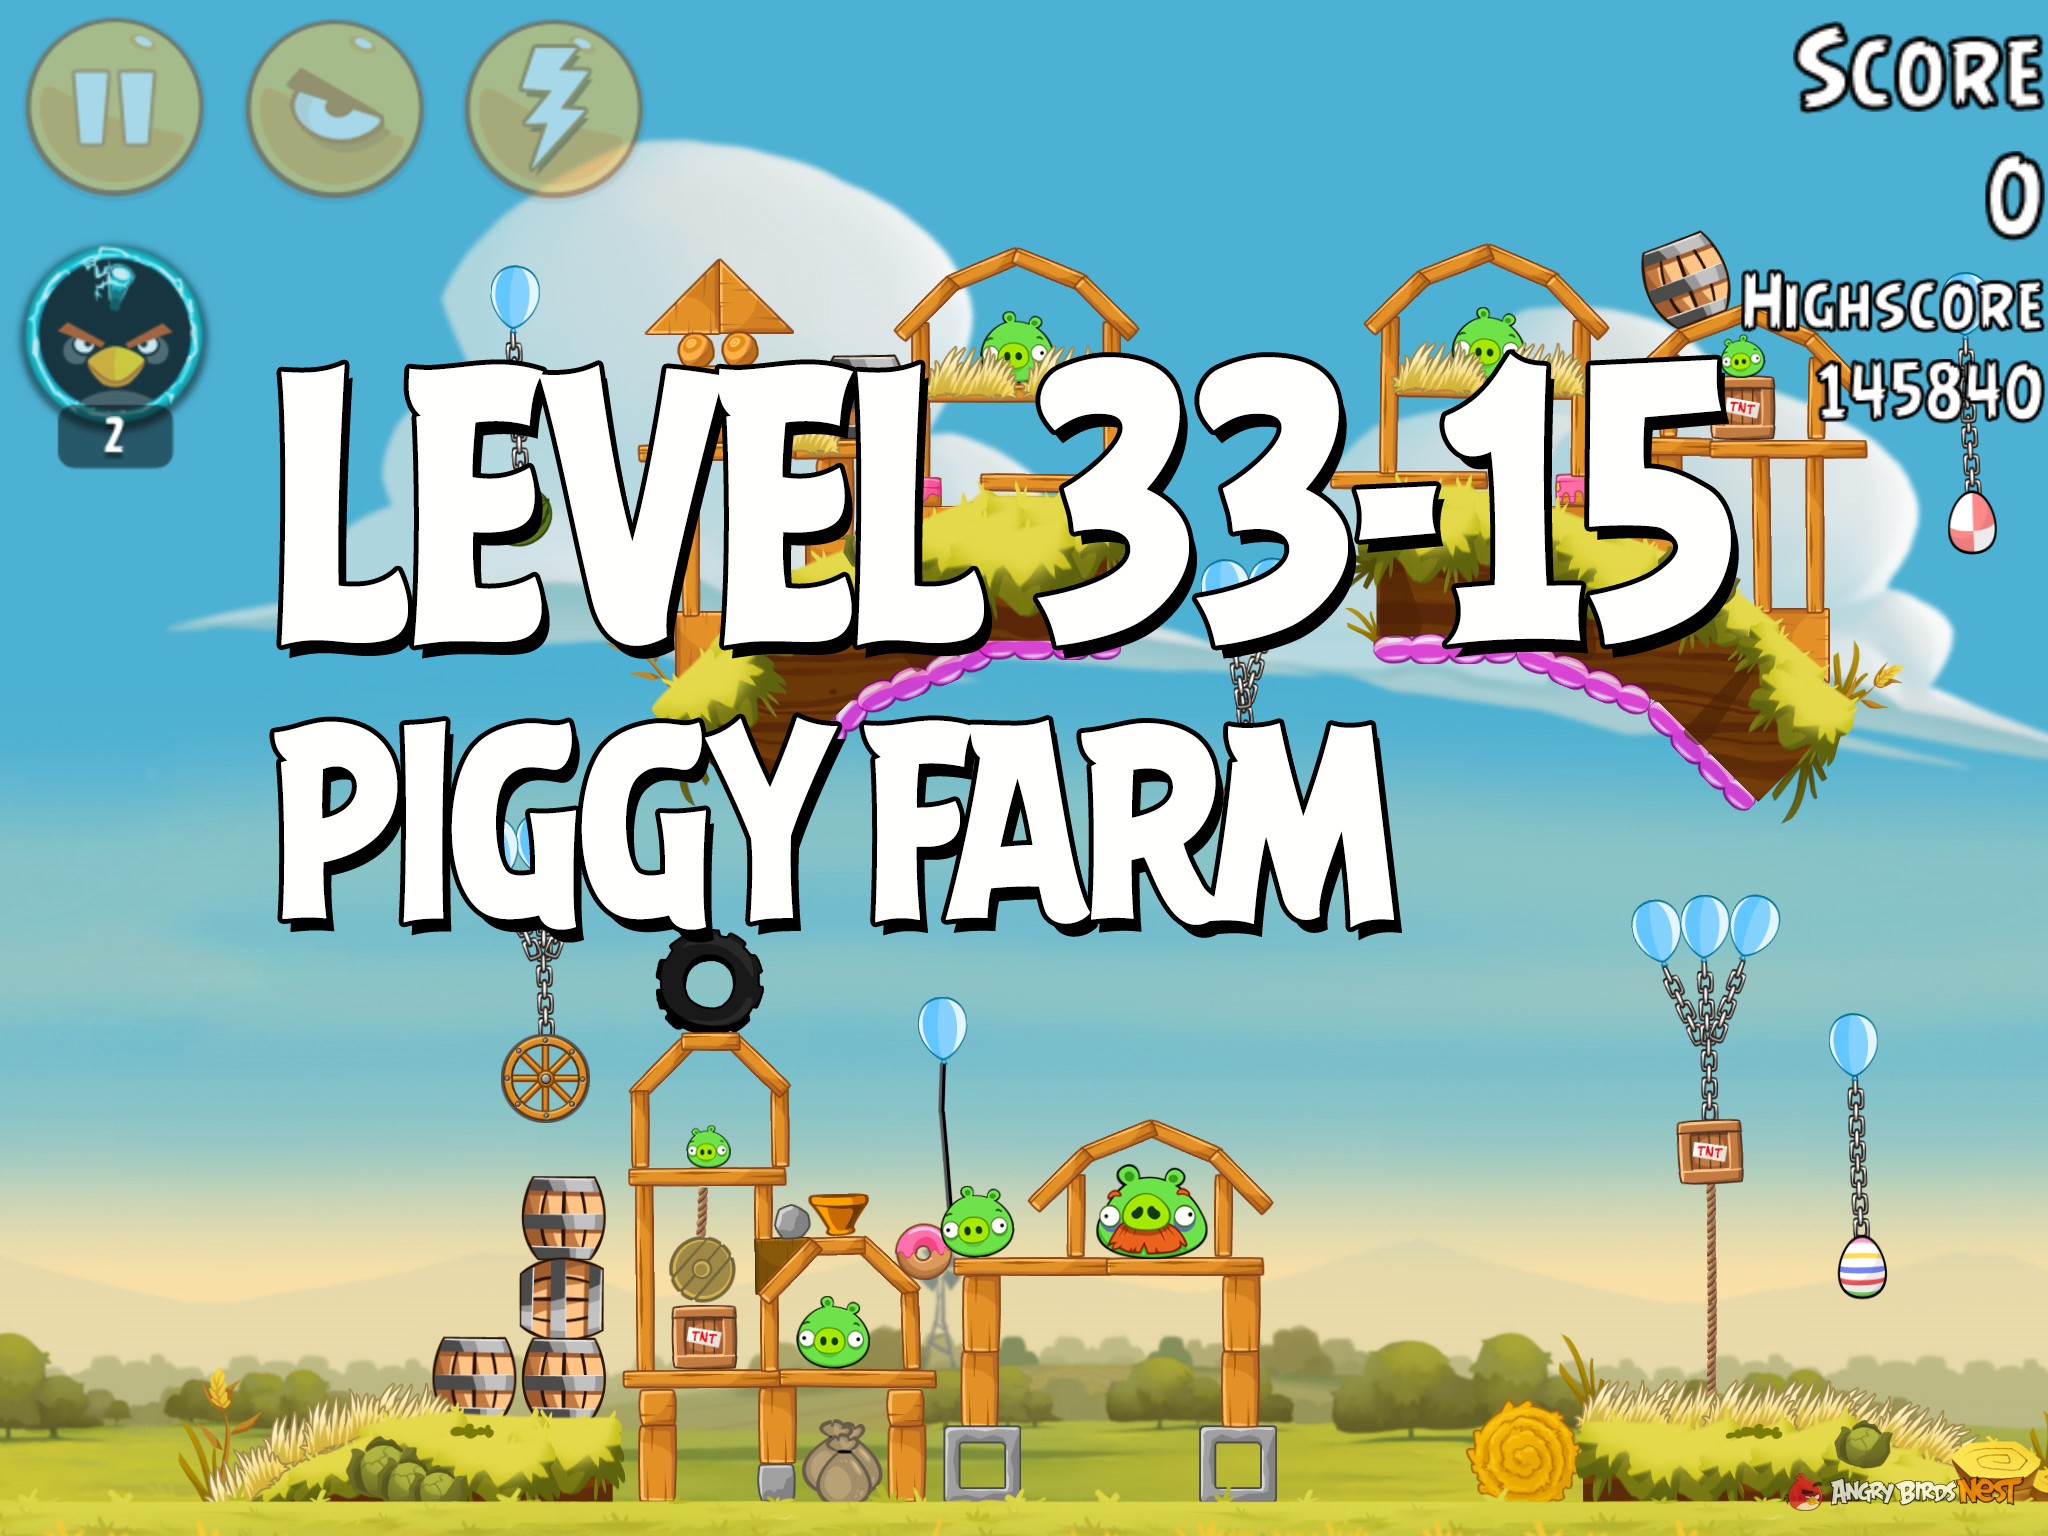 Angry-Birds-Piggy-Farm-Level-33-15